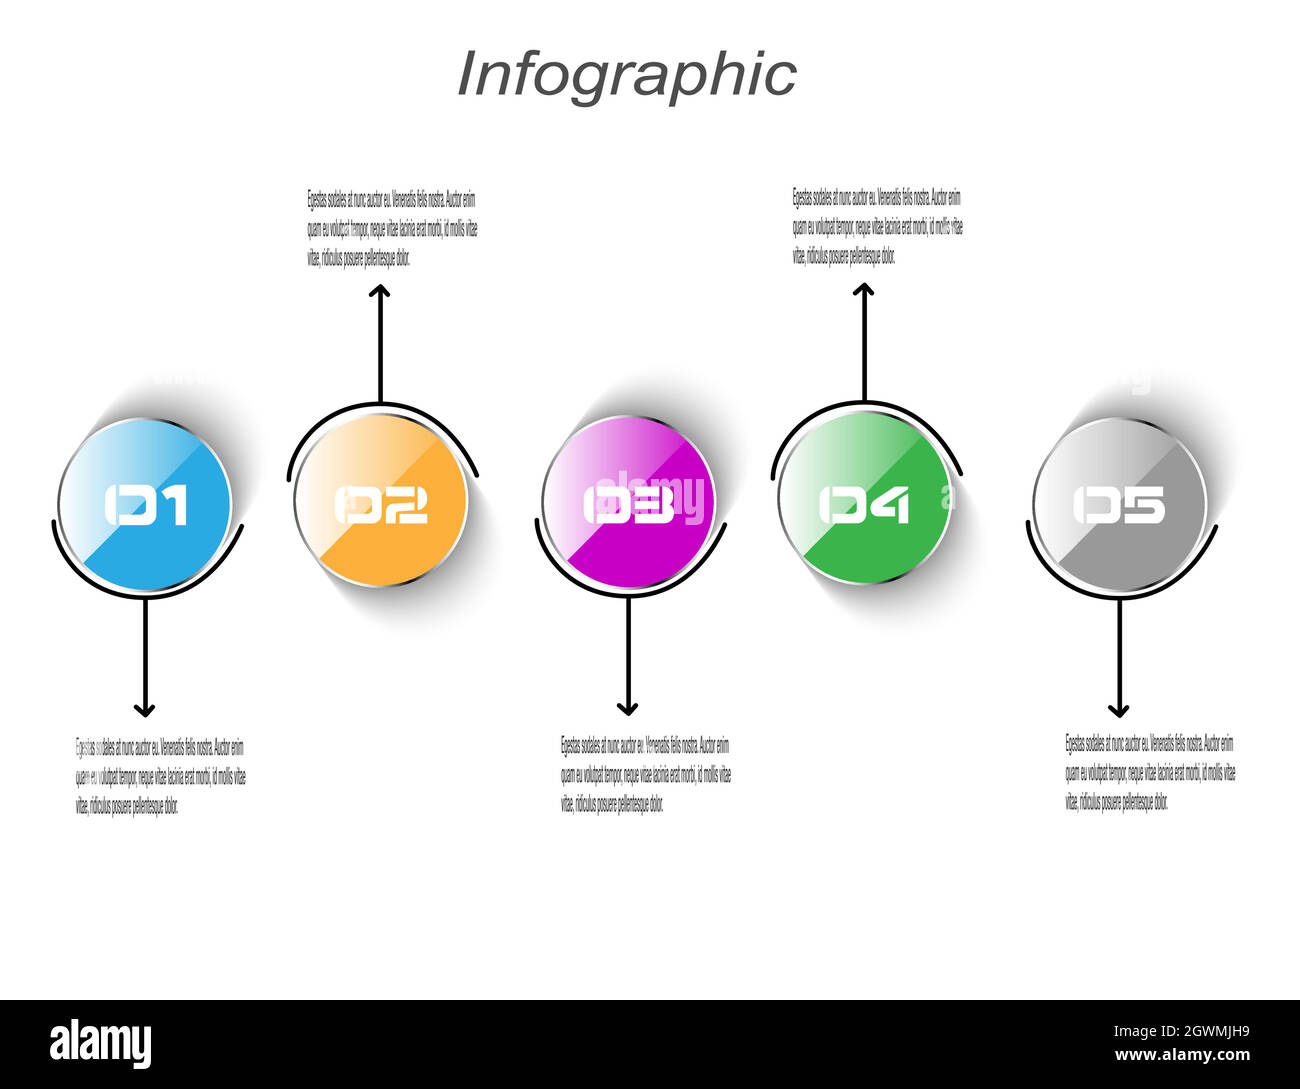 Modèle d'affichage de l'infographie. Idée d'afficher les informations, le classement et les statistiques. Illustration de Vecteur